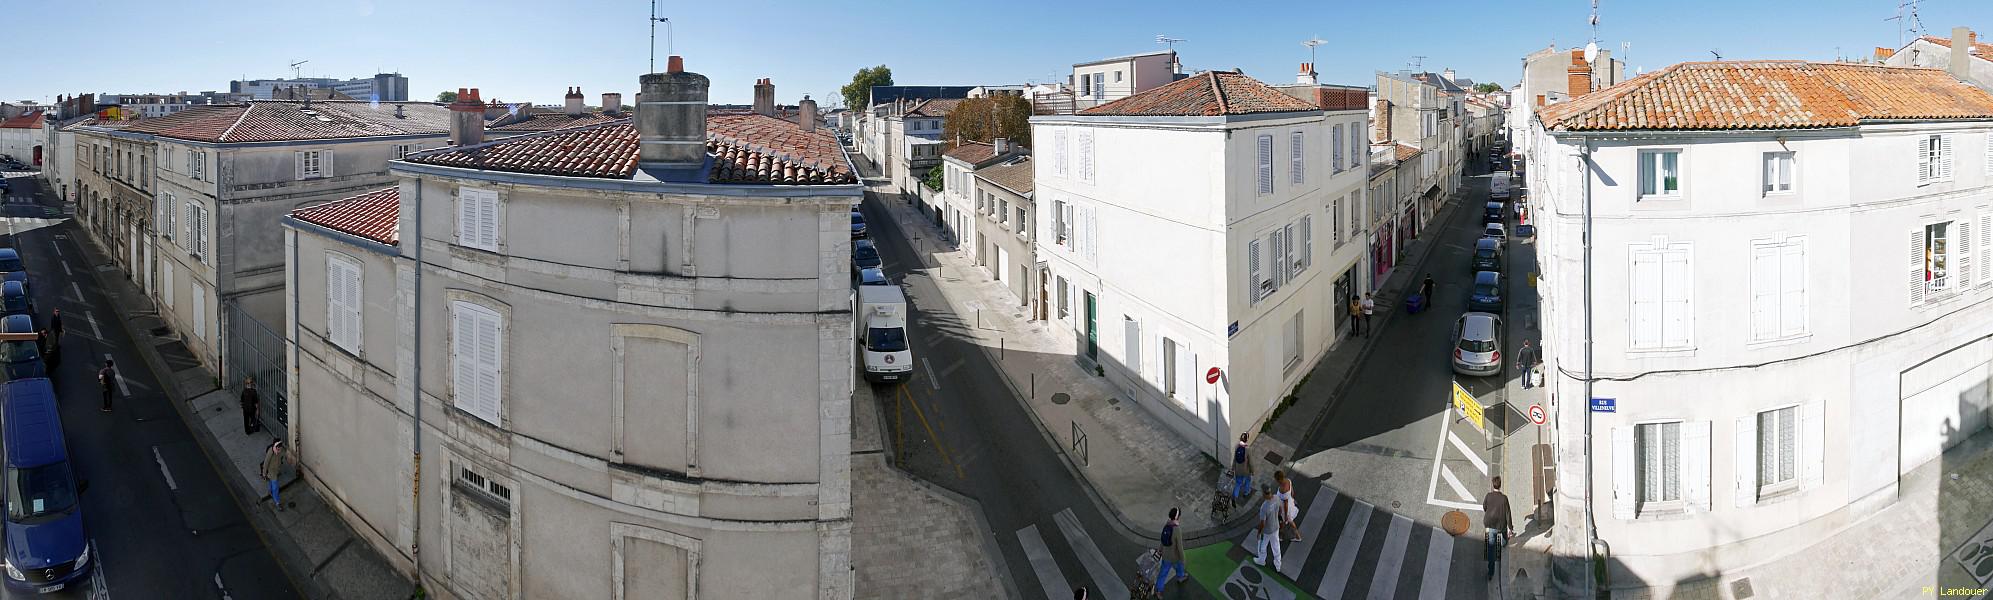 La Rochelle vu d'en haut, 28 rue Villeneuve